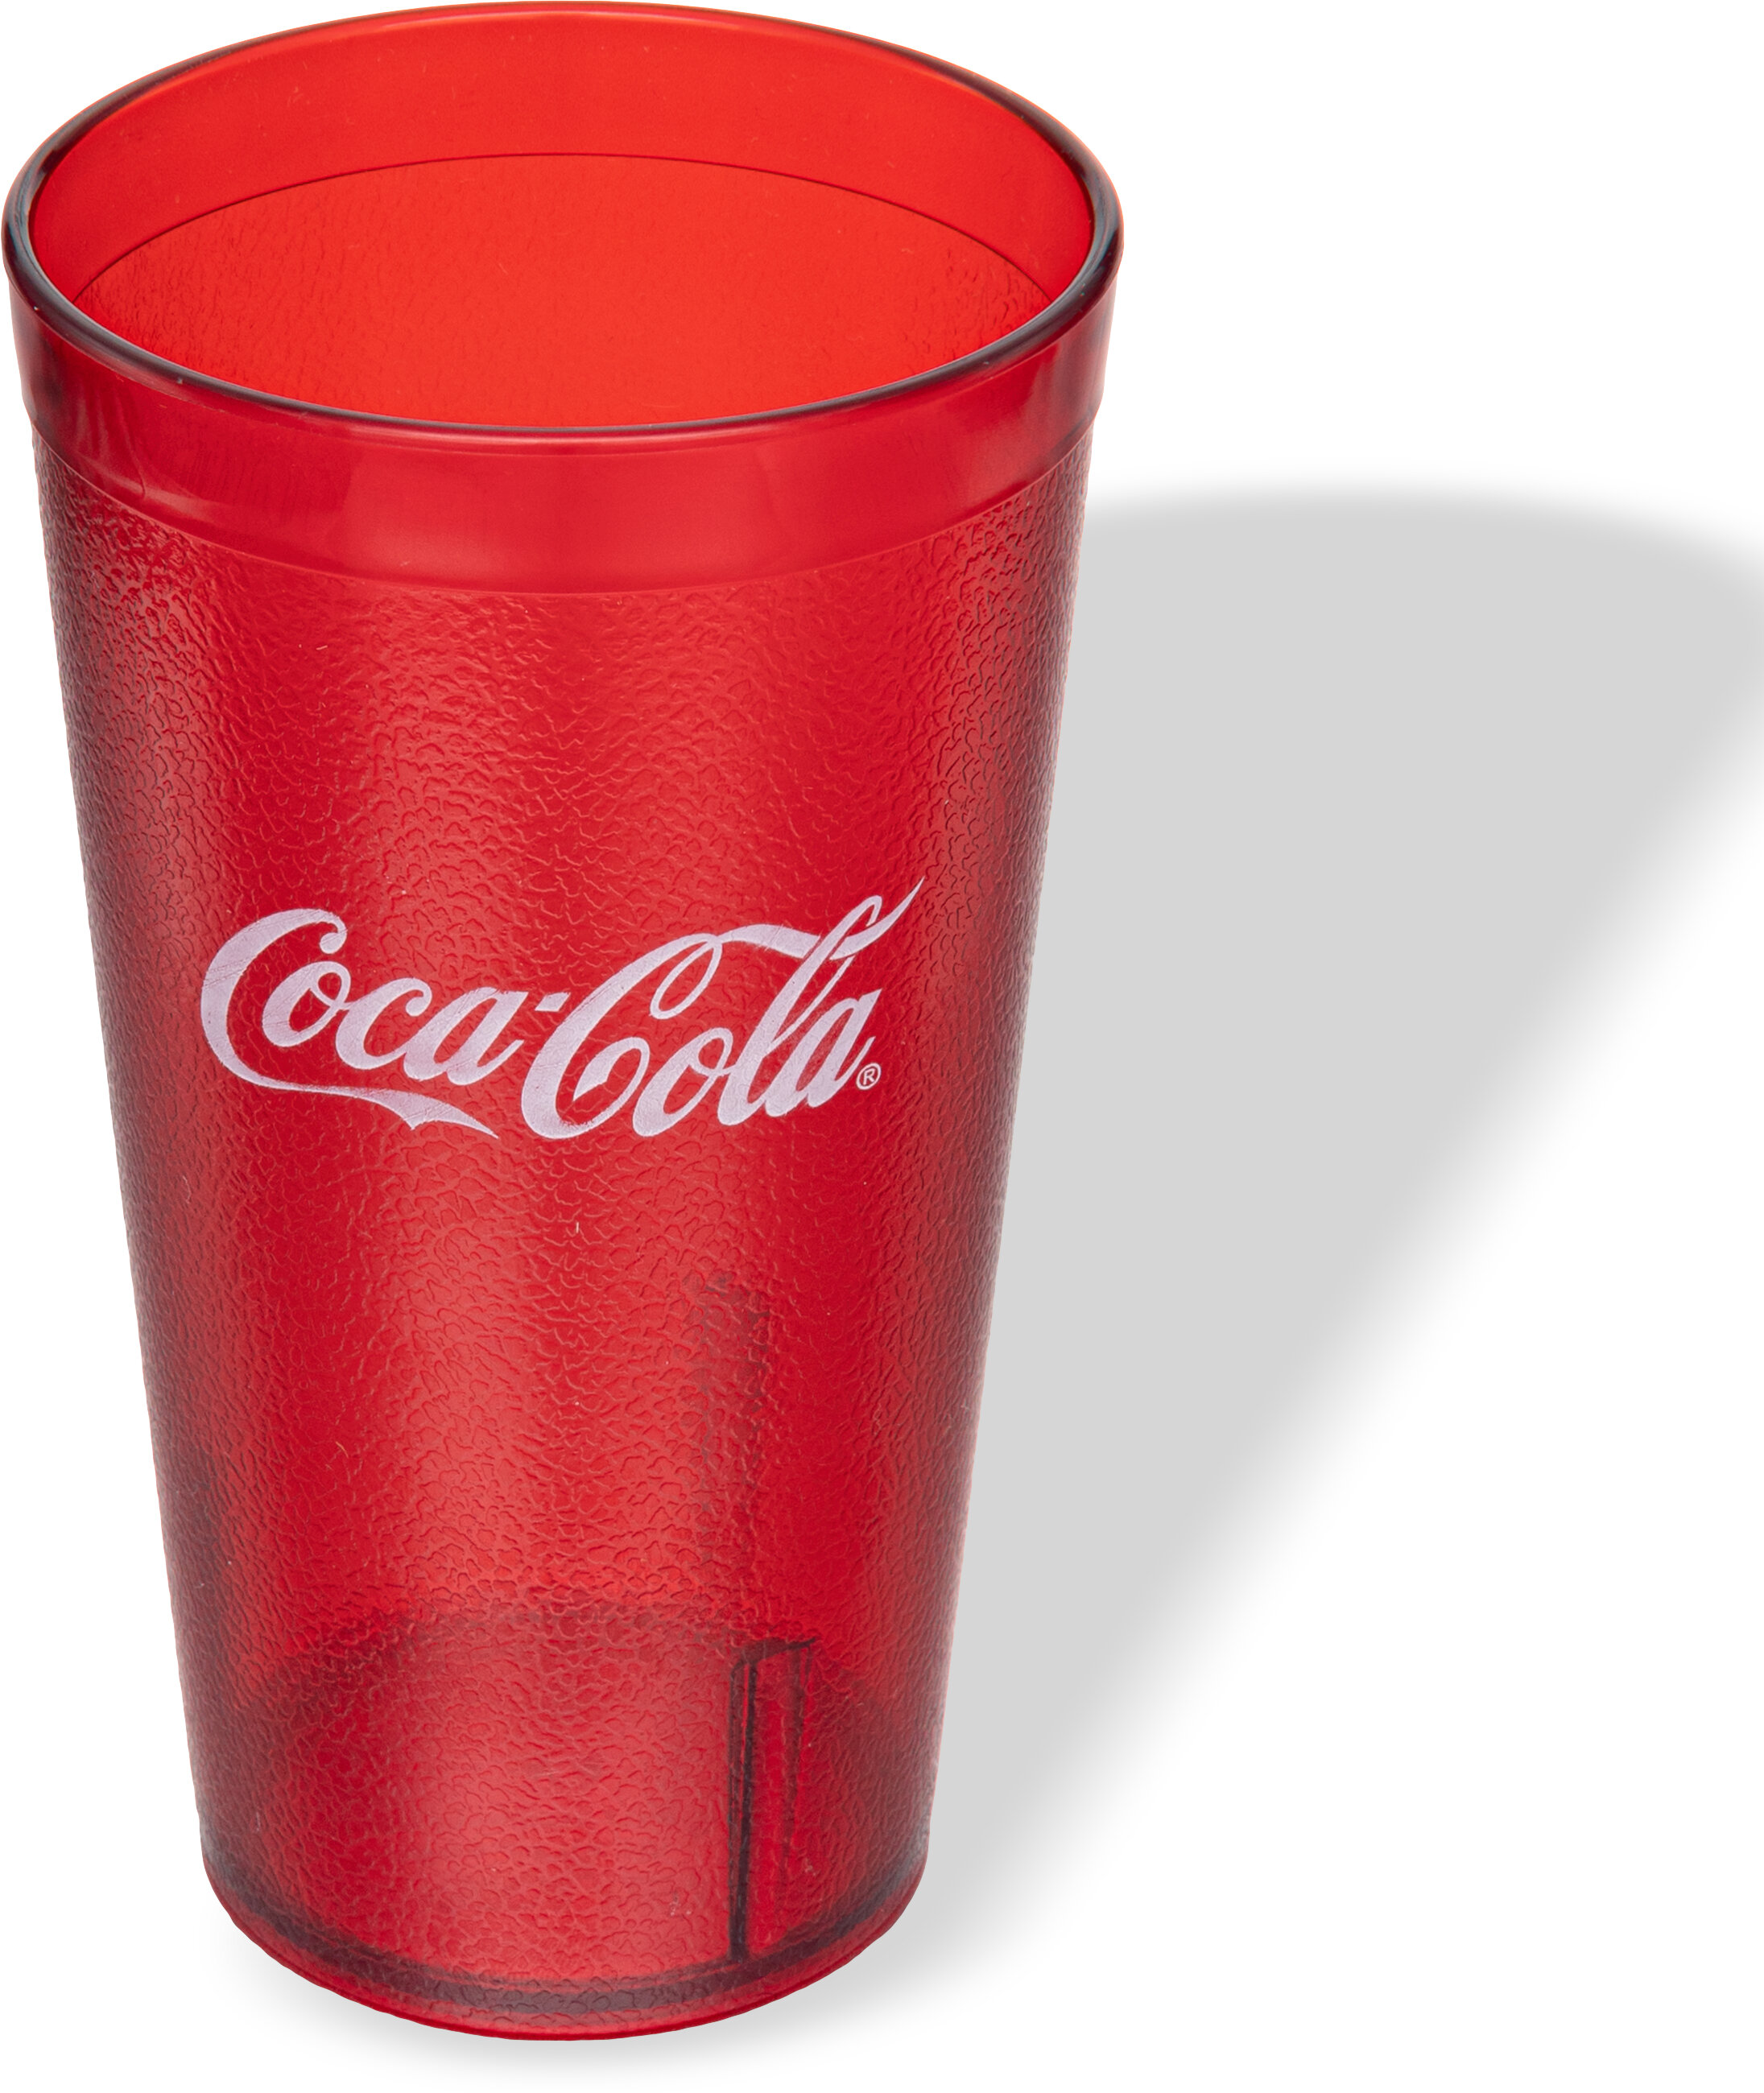 Buy Coca Cola 16oz Styrofoam Cups Online